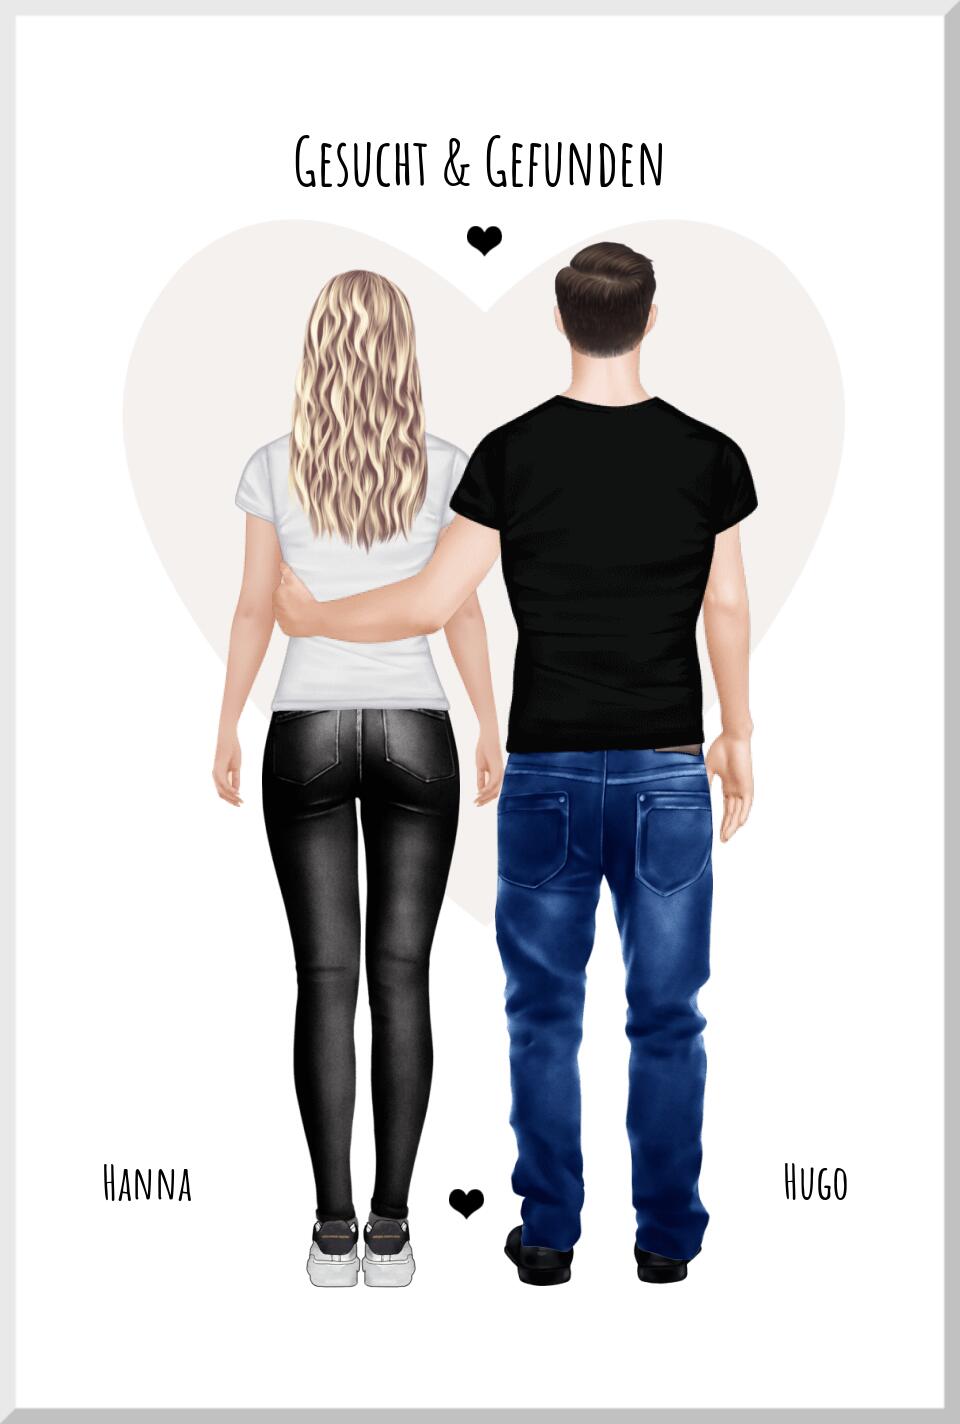 Gesucht & gefunden - personalisiertes Partner Geschenk für Paare, die Partnerin als Poster/Leinwanddruck